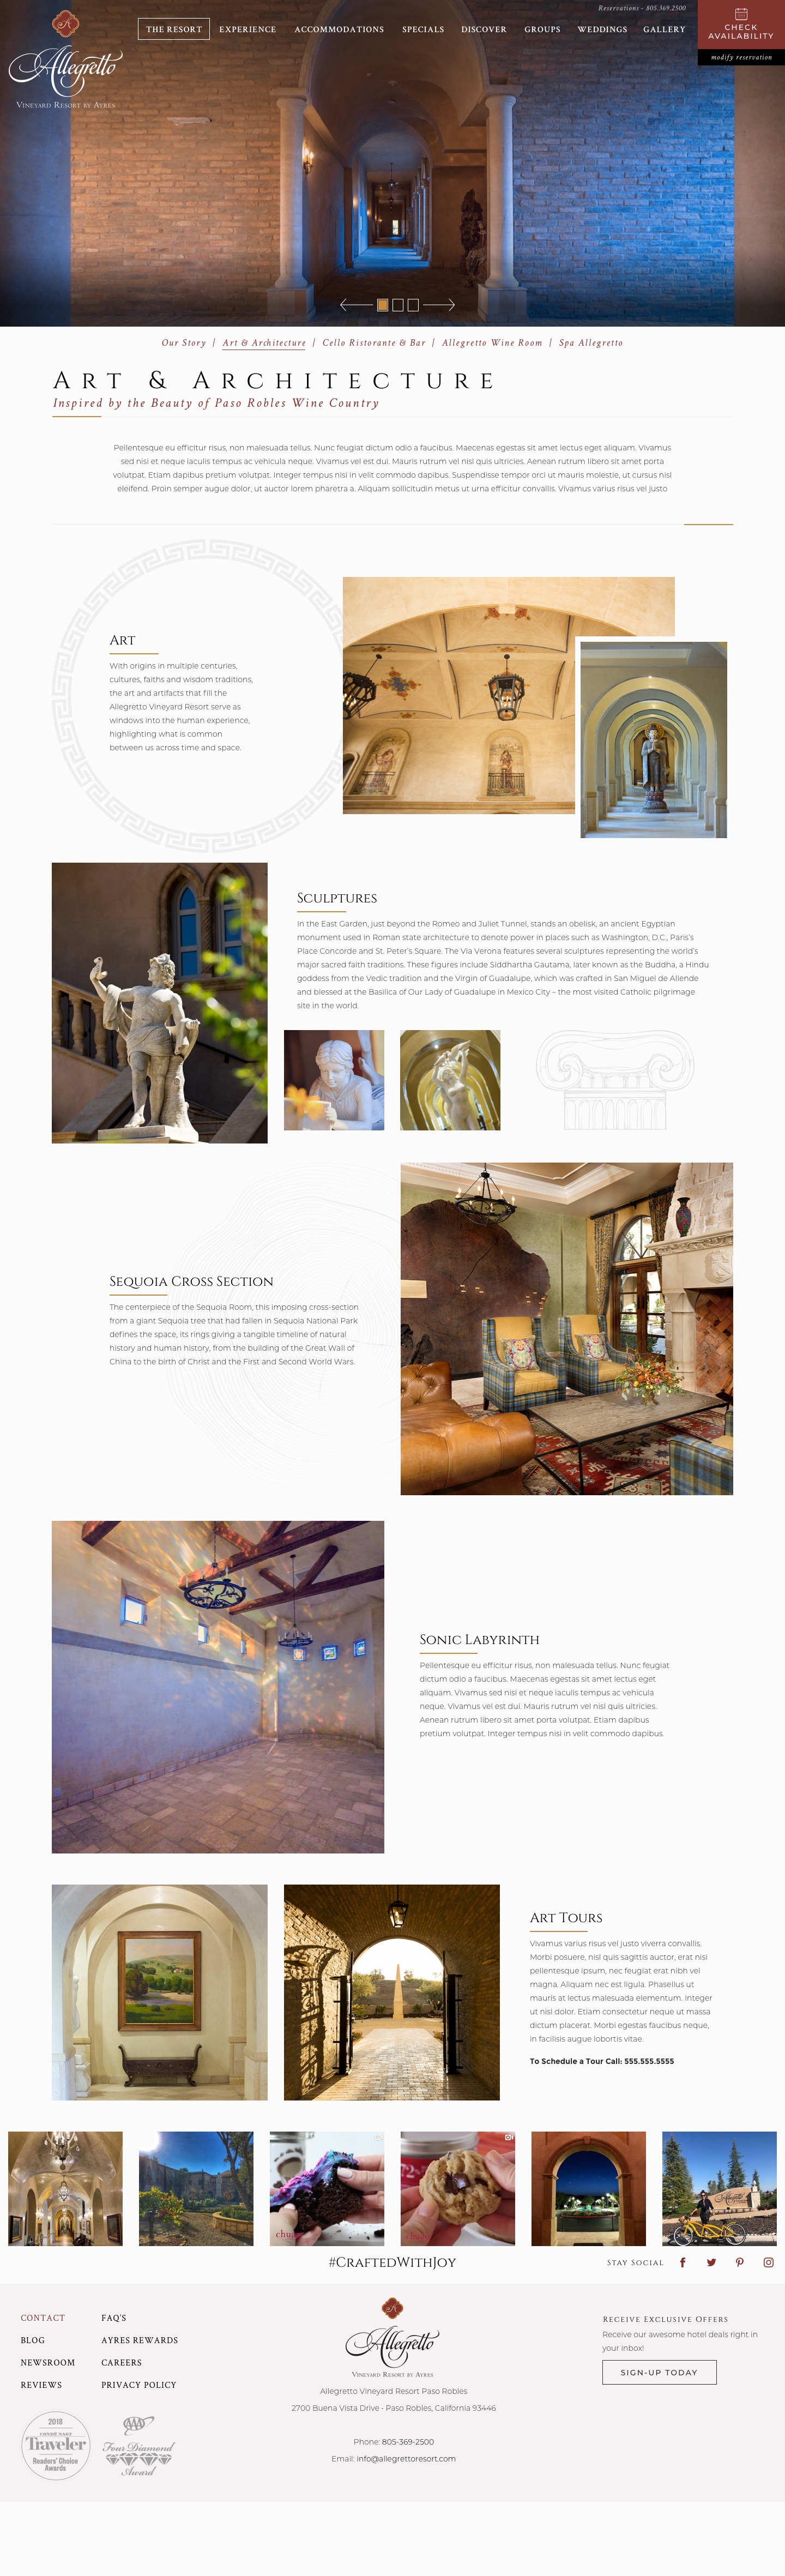 Allegretto Vineyard Resort - Art & Architecture Page Design